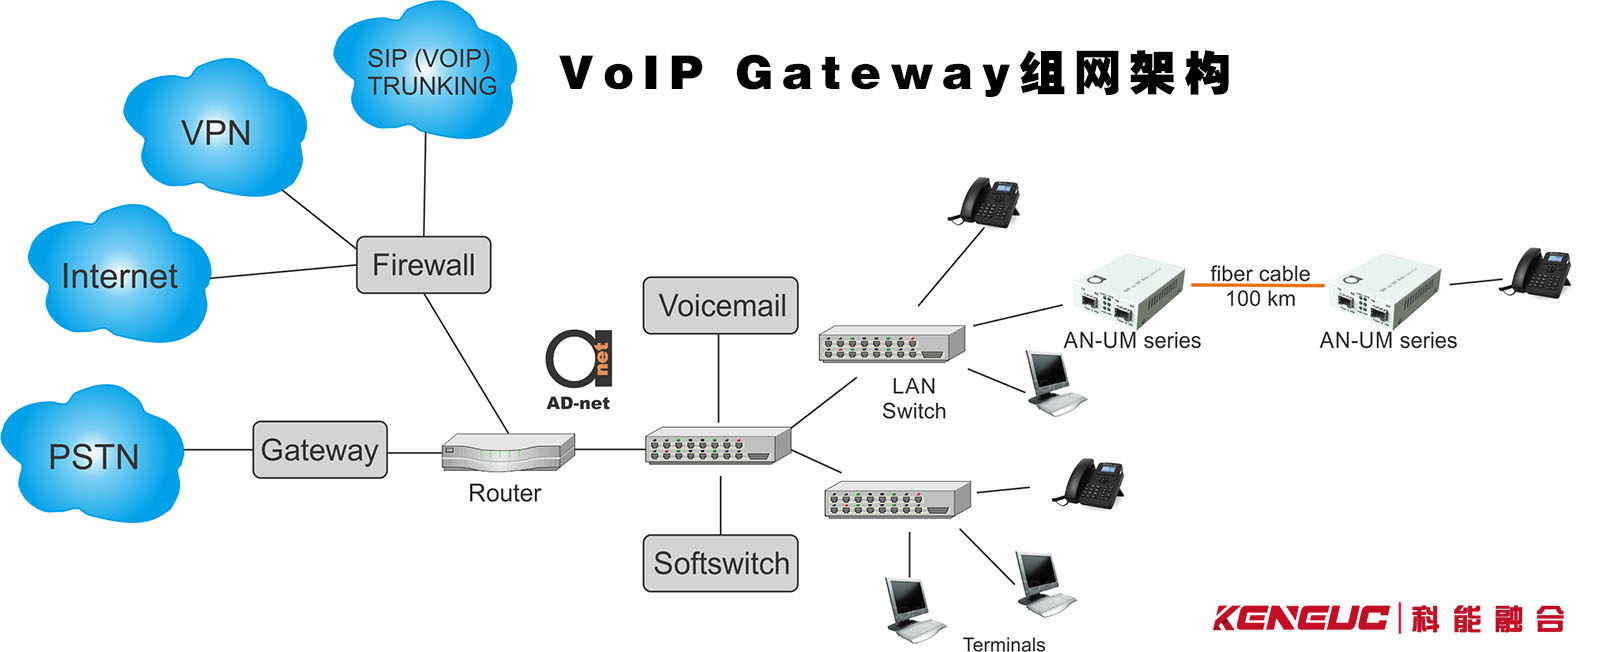 什么是VoIP Gateway